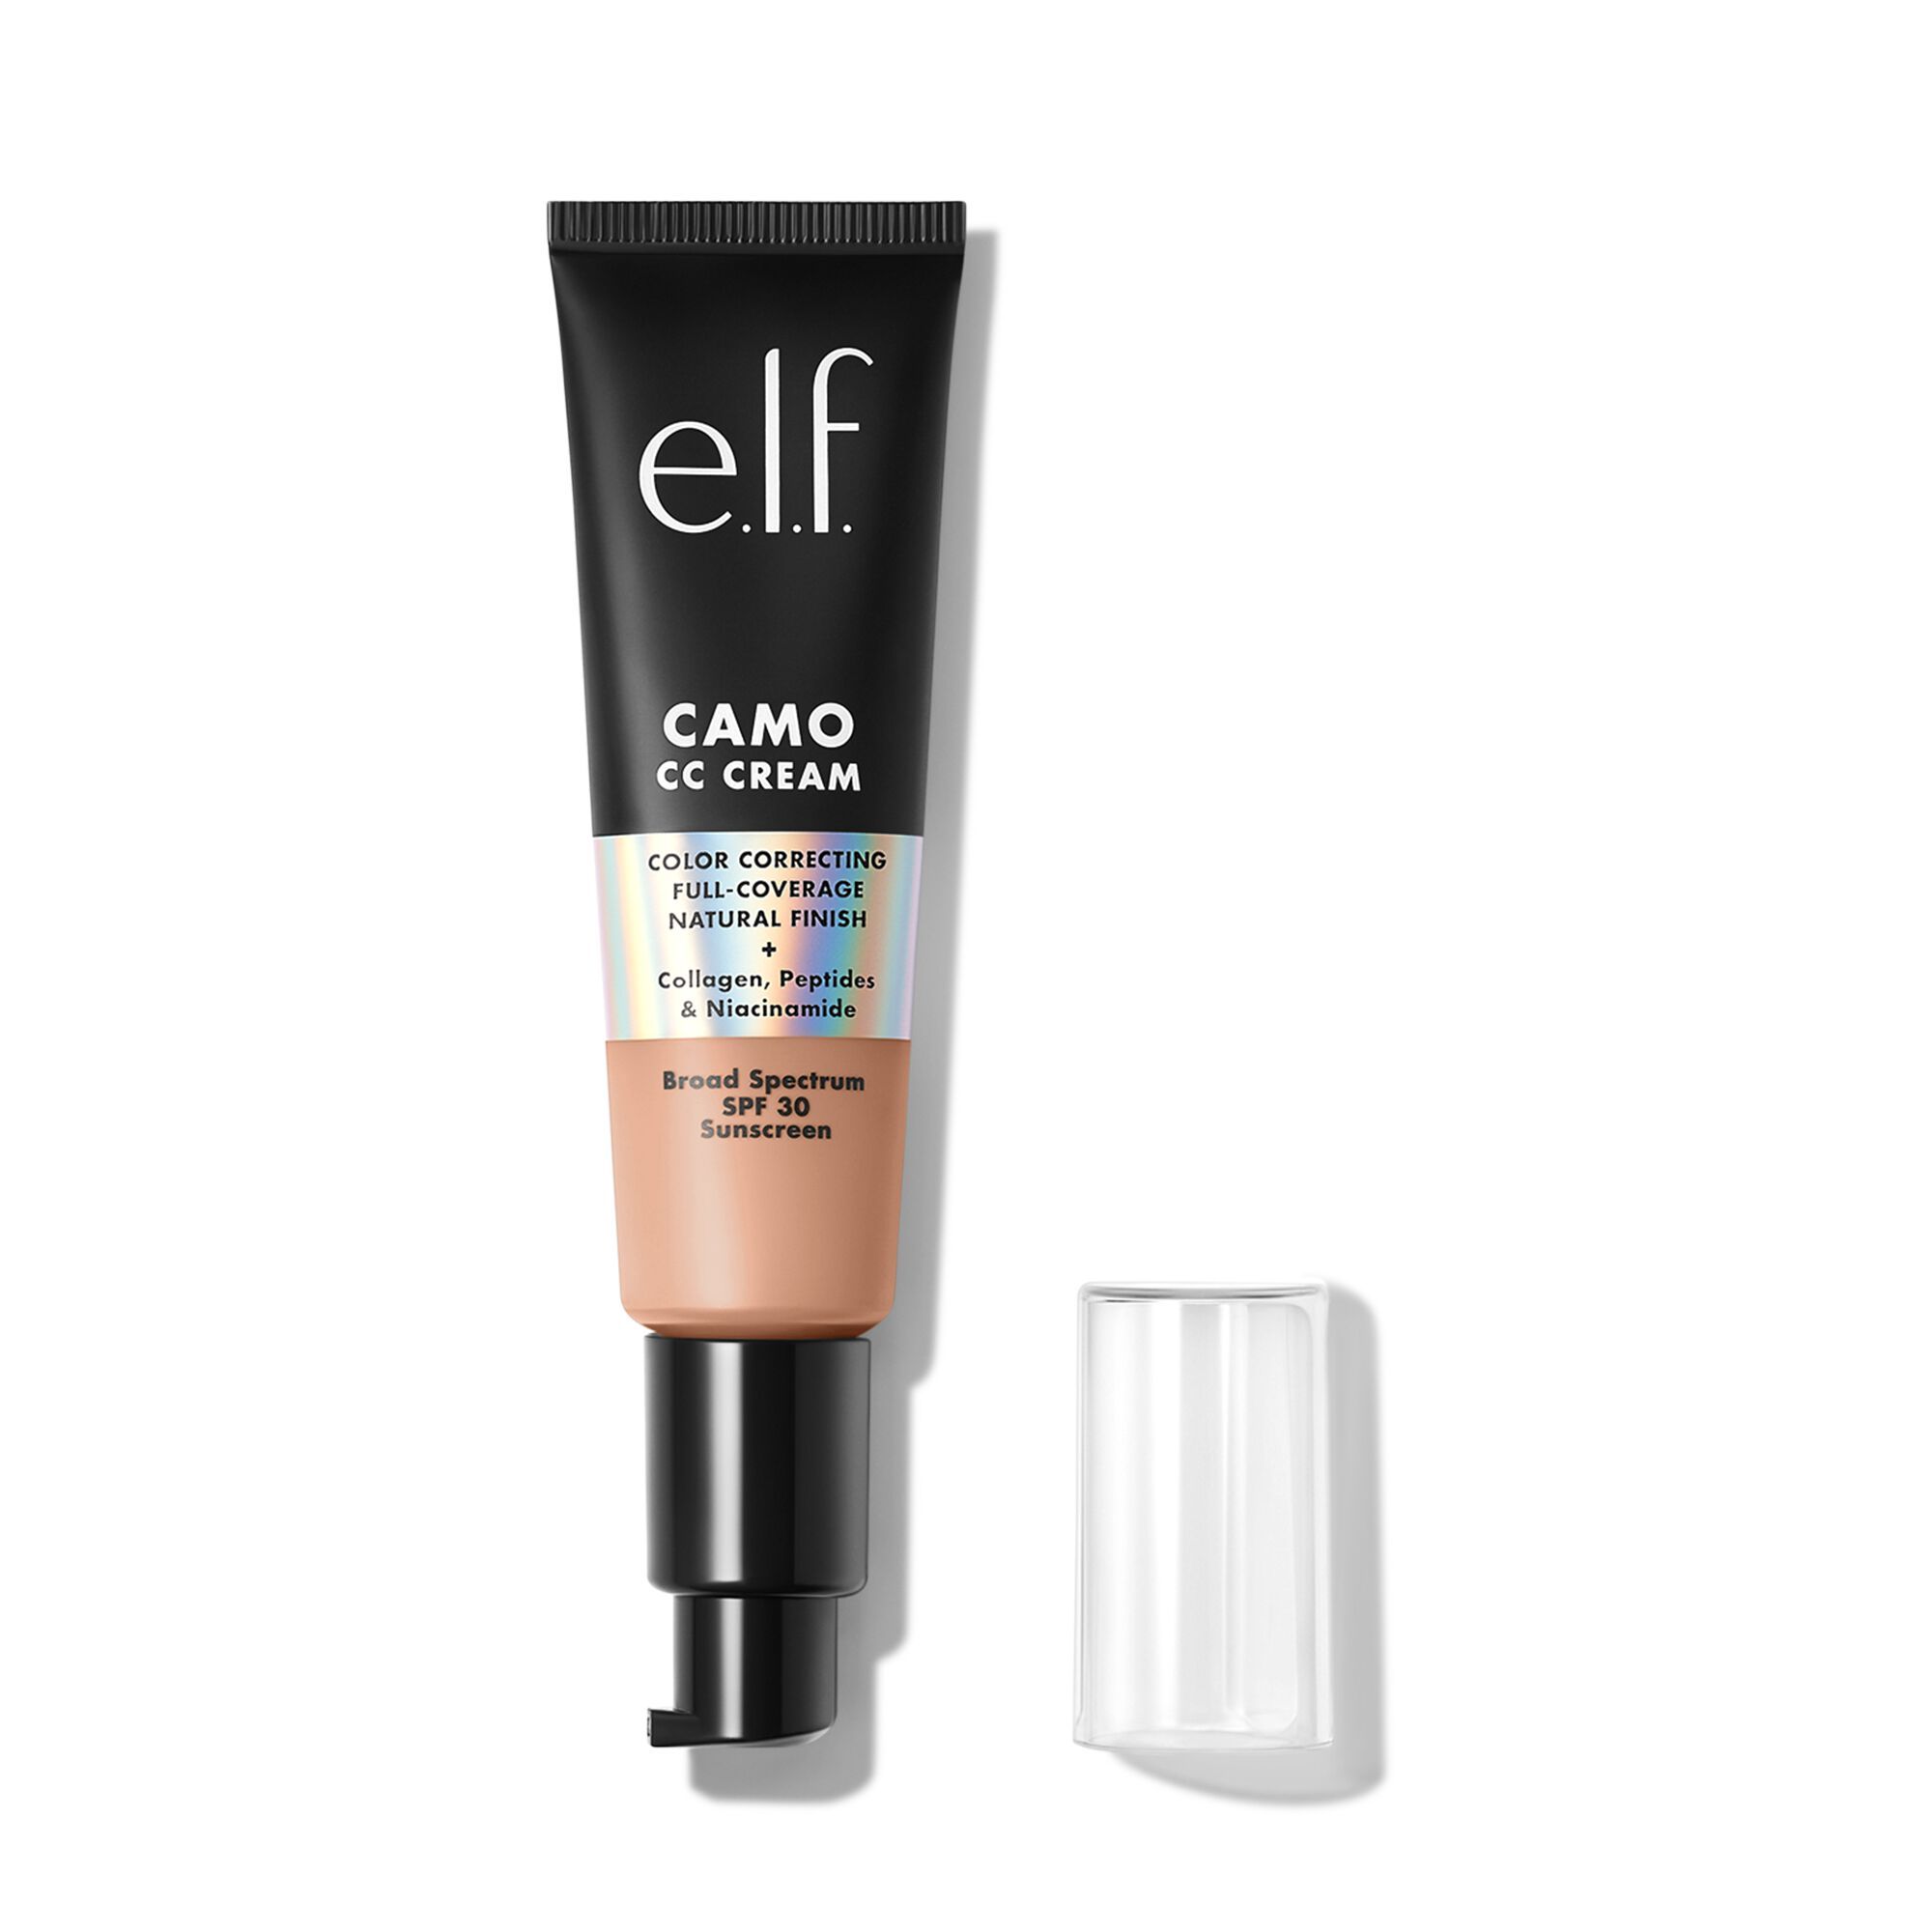 Camo CC Cream | e.l.f. cosmetics (US)